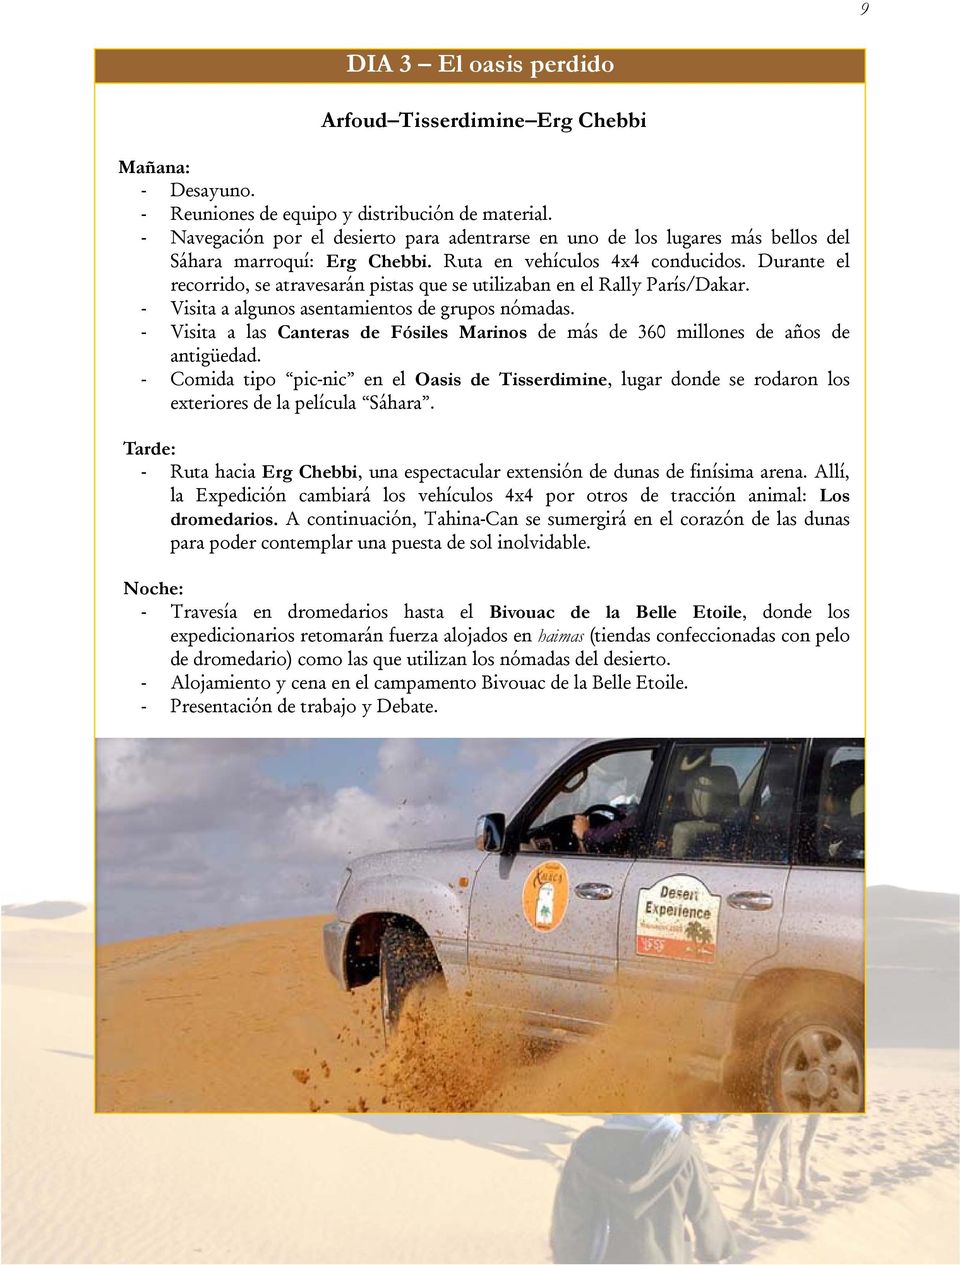 Durante el recorrido, se atravesarán pistas que se utilizaban en el Rally París/Dakar. - Visita a algunos asentamientos de grupos nómadas.